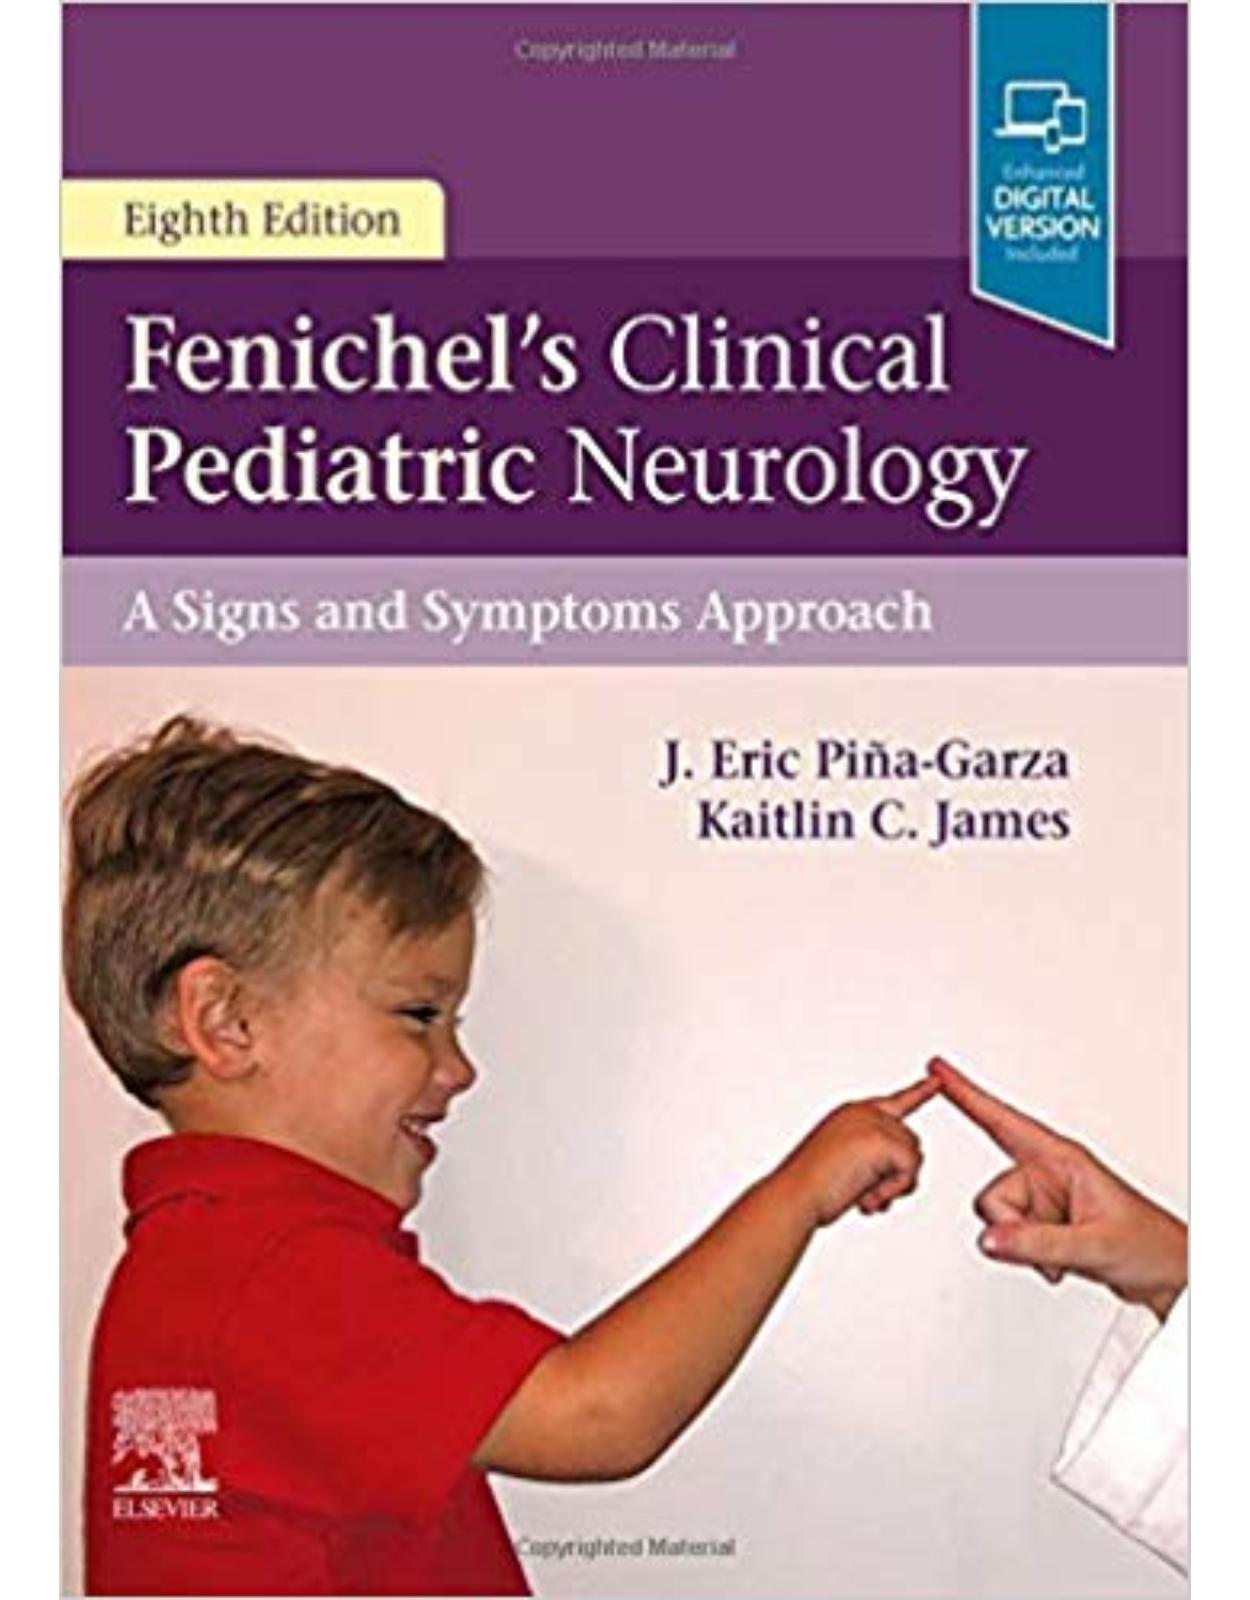 Fenichel's Clinical Pediatric Neurology, 8th Edition 